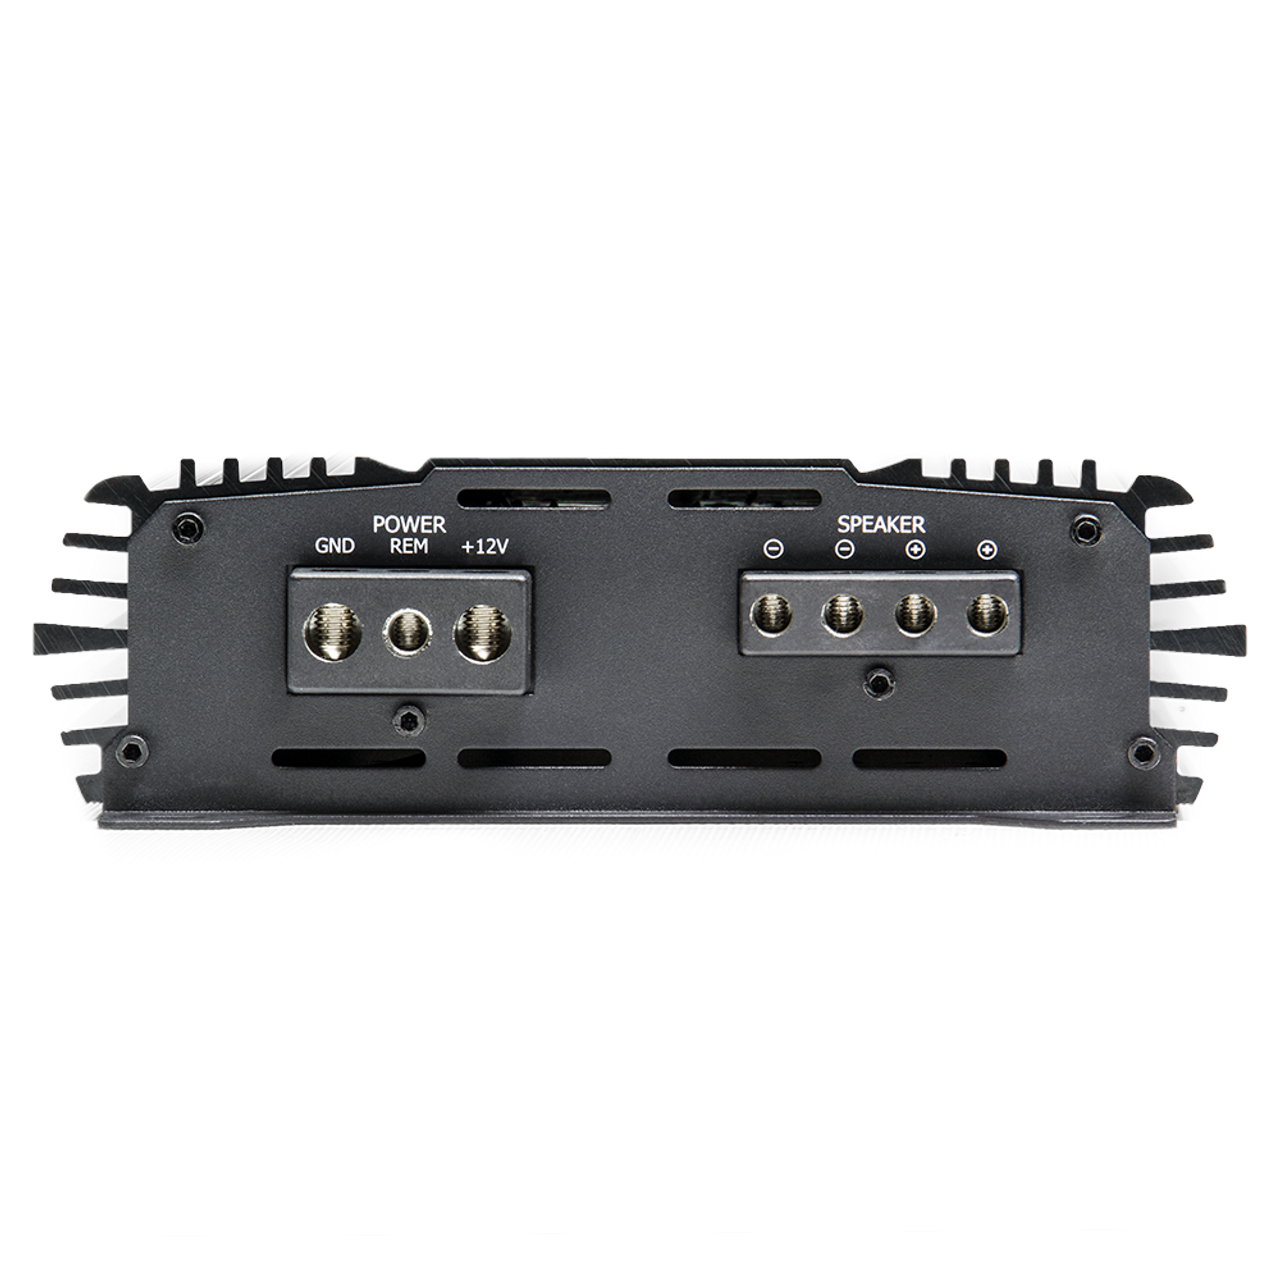 SOUNDQUBED S1-850.1 S Series Monoblock Amplifier